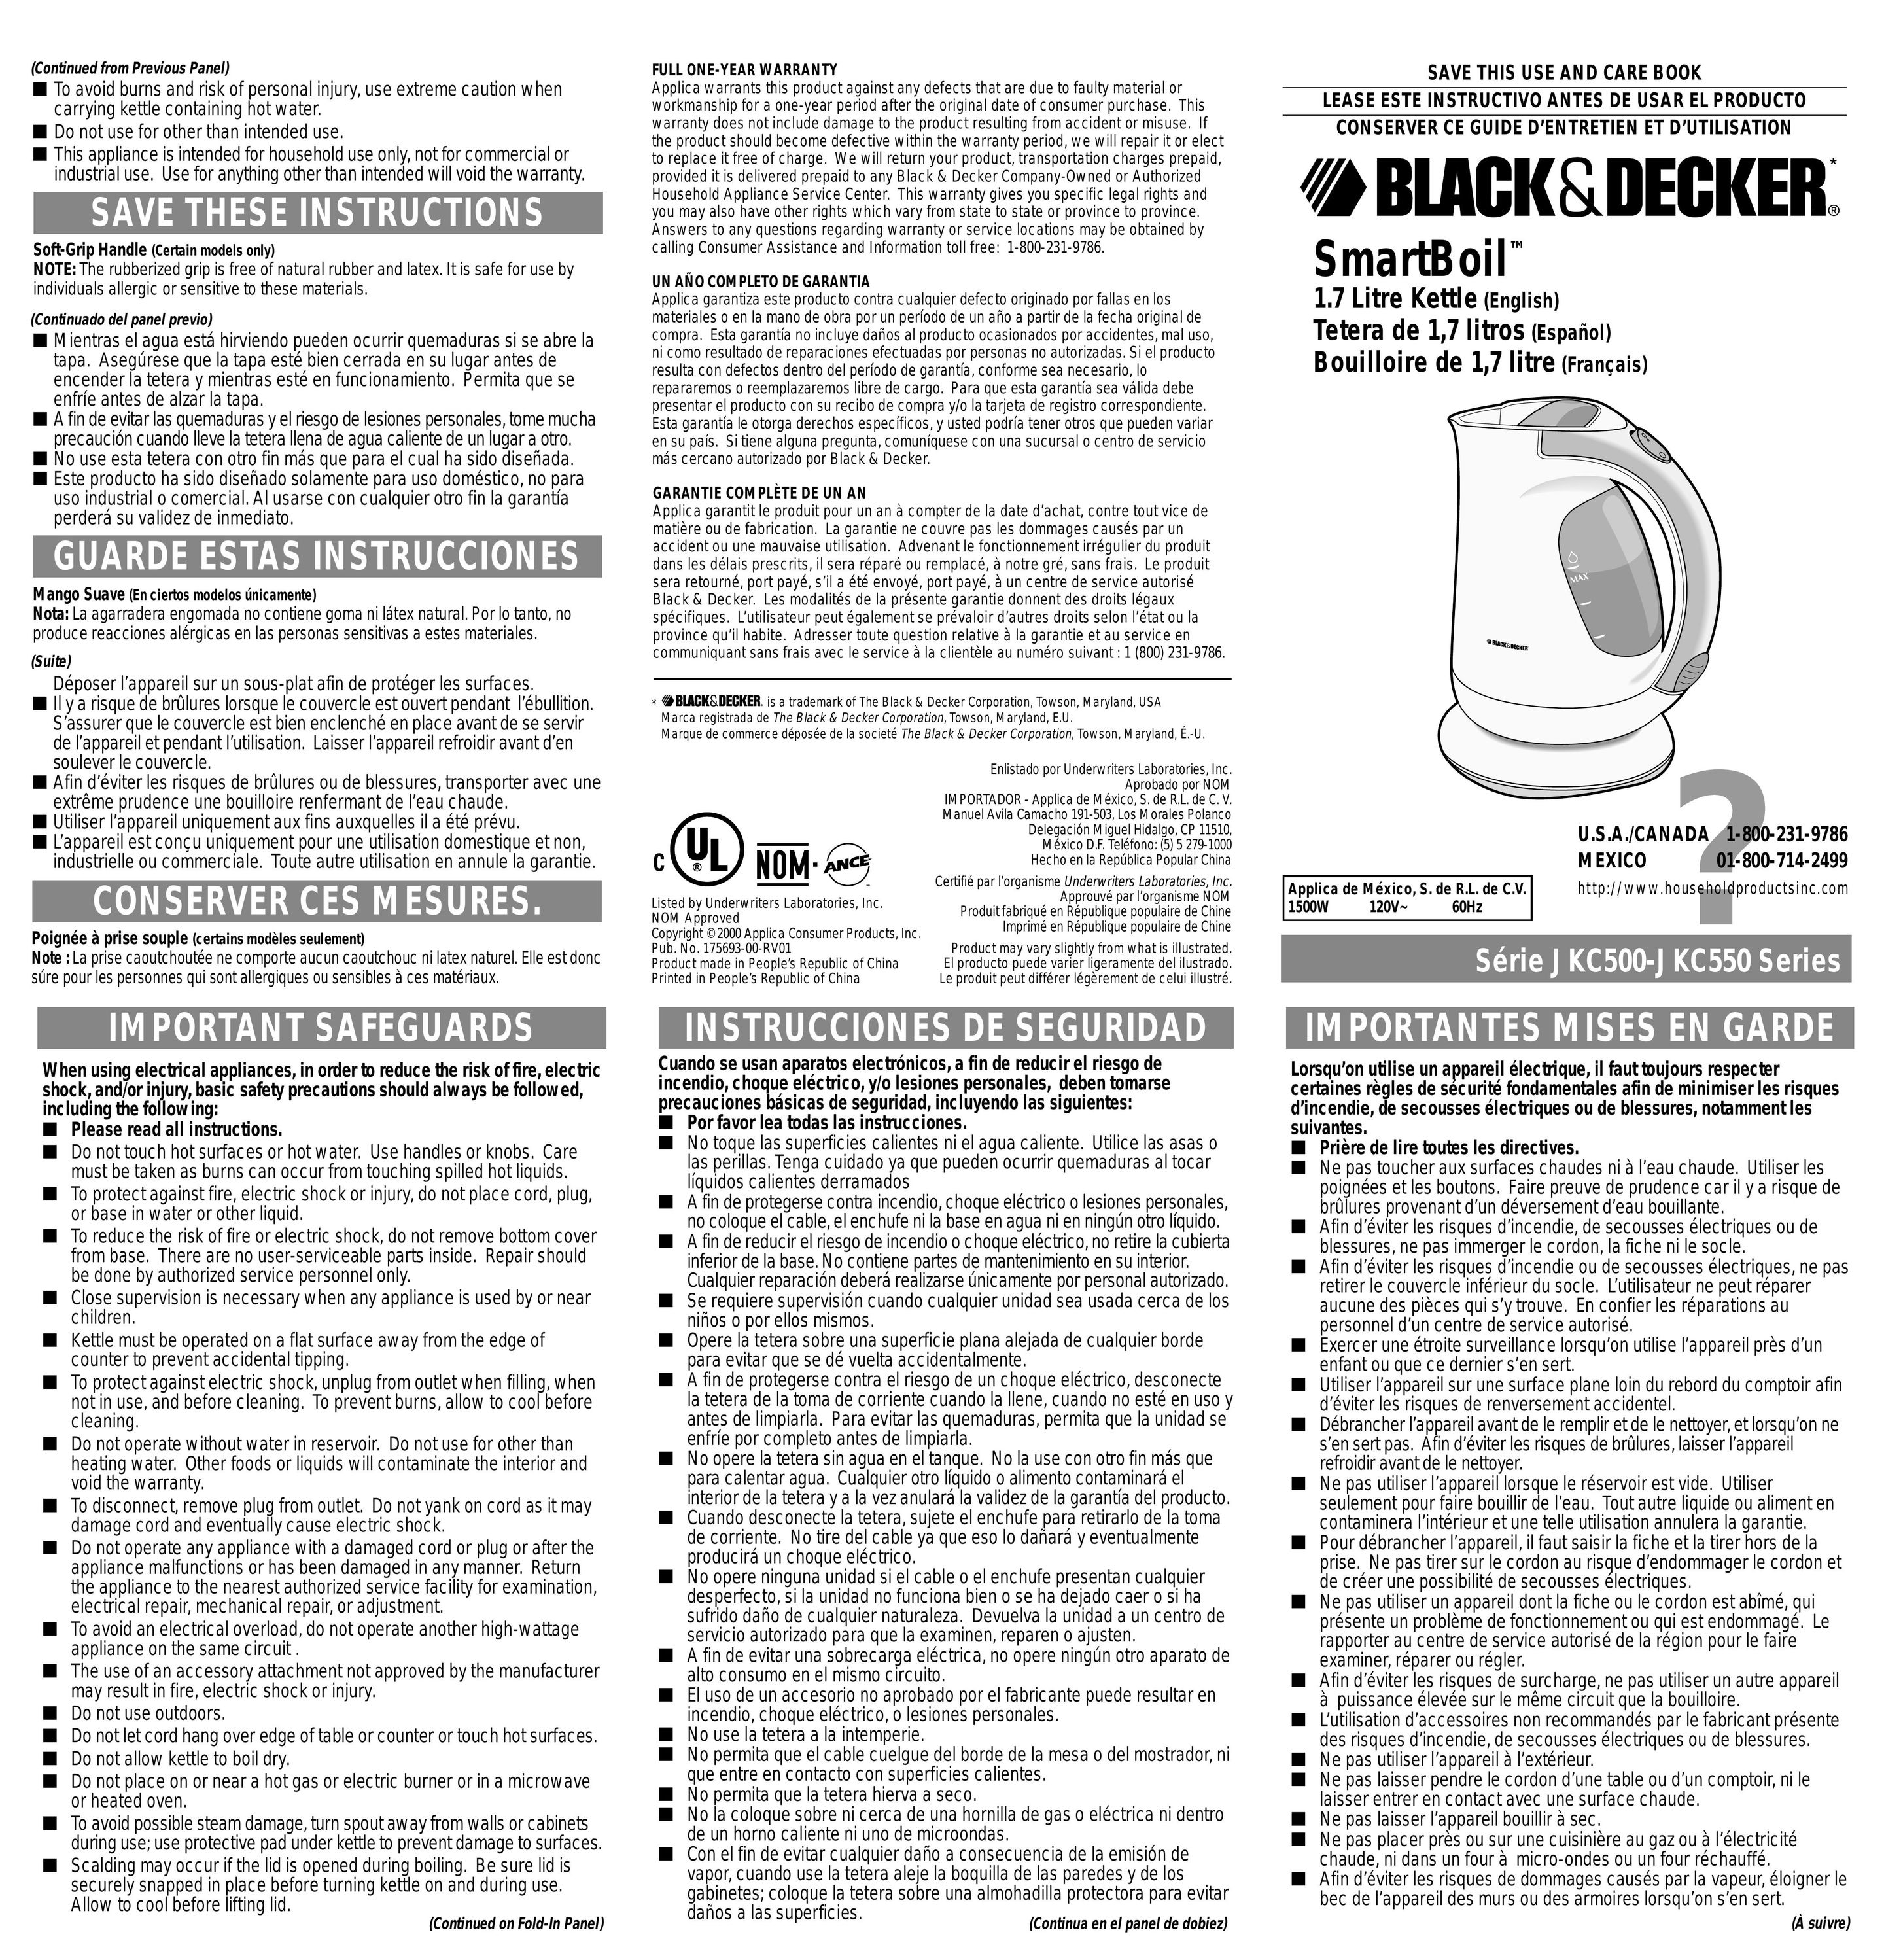 Black & Decker JKC500 Hot Beverage Maker User Manual